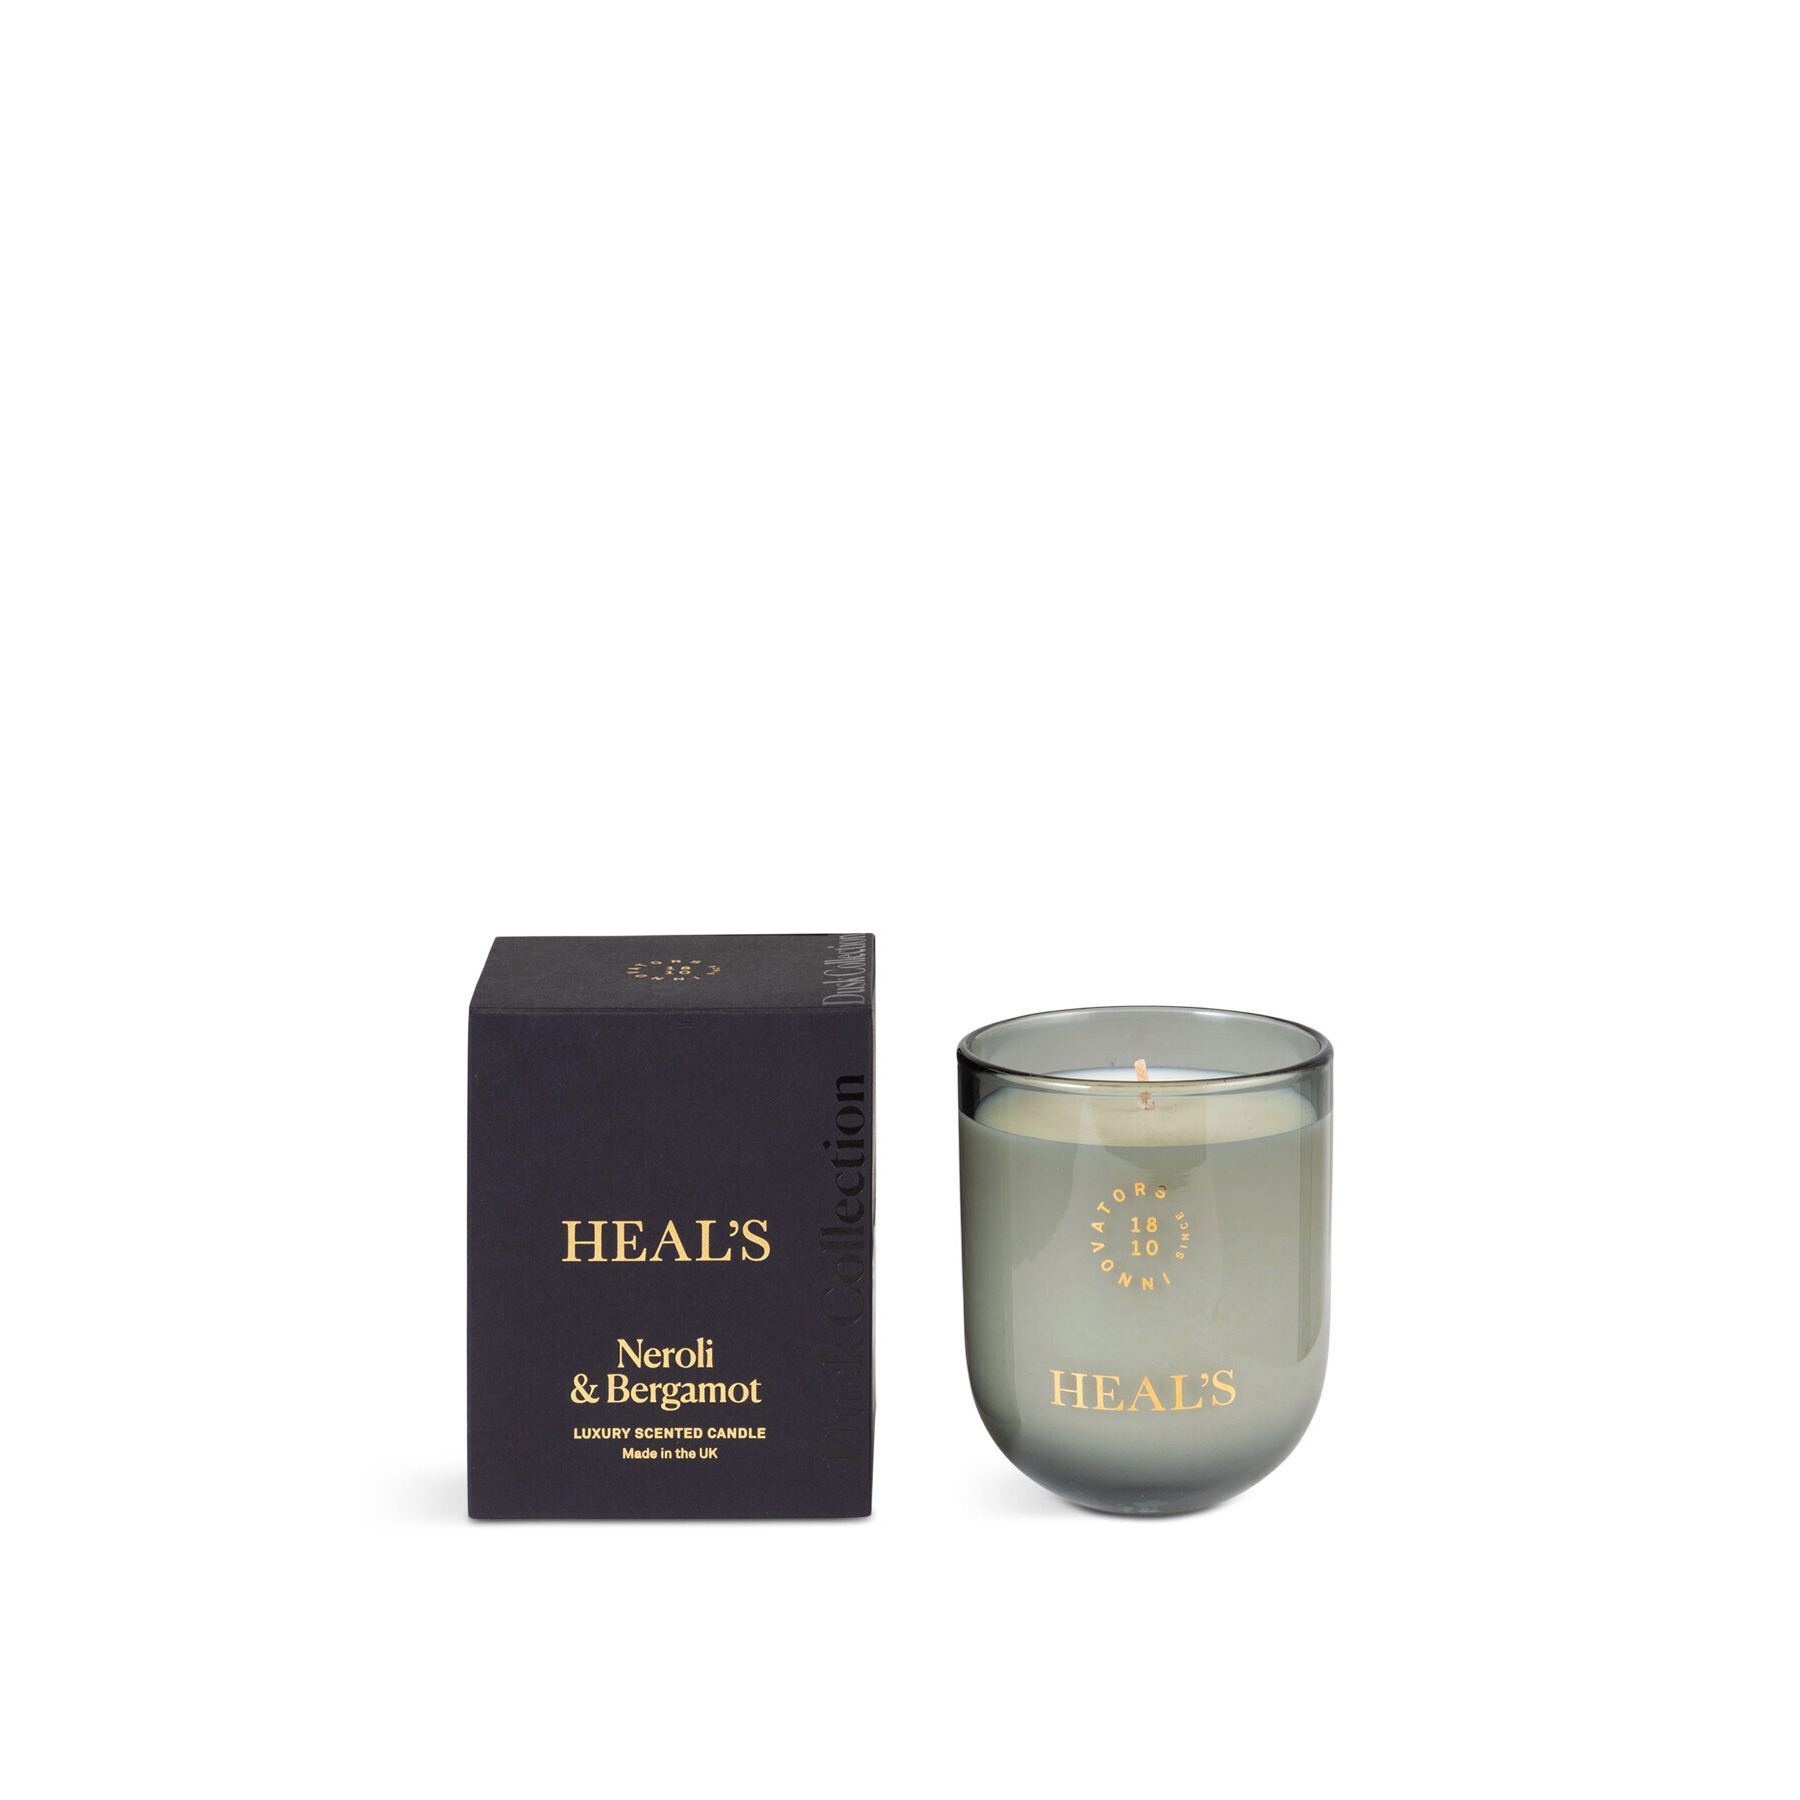 Heal's Dusk Neroli & Bergamot Candle Grey - image 1